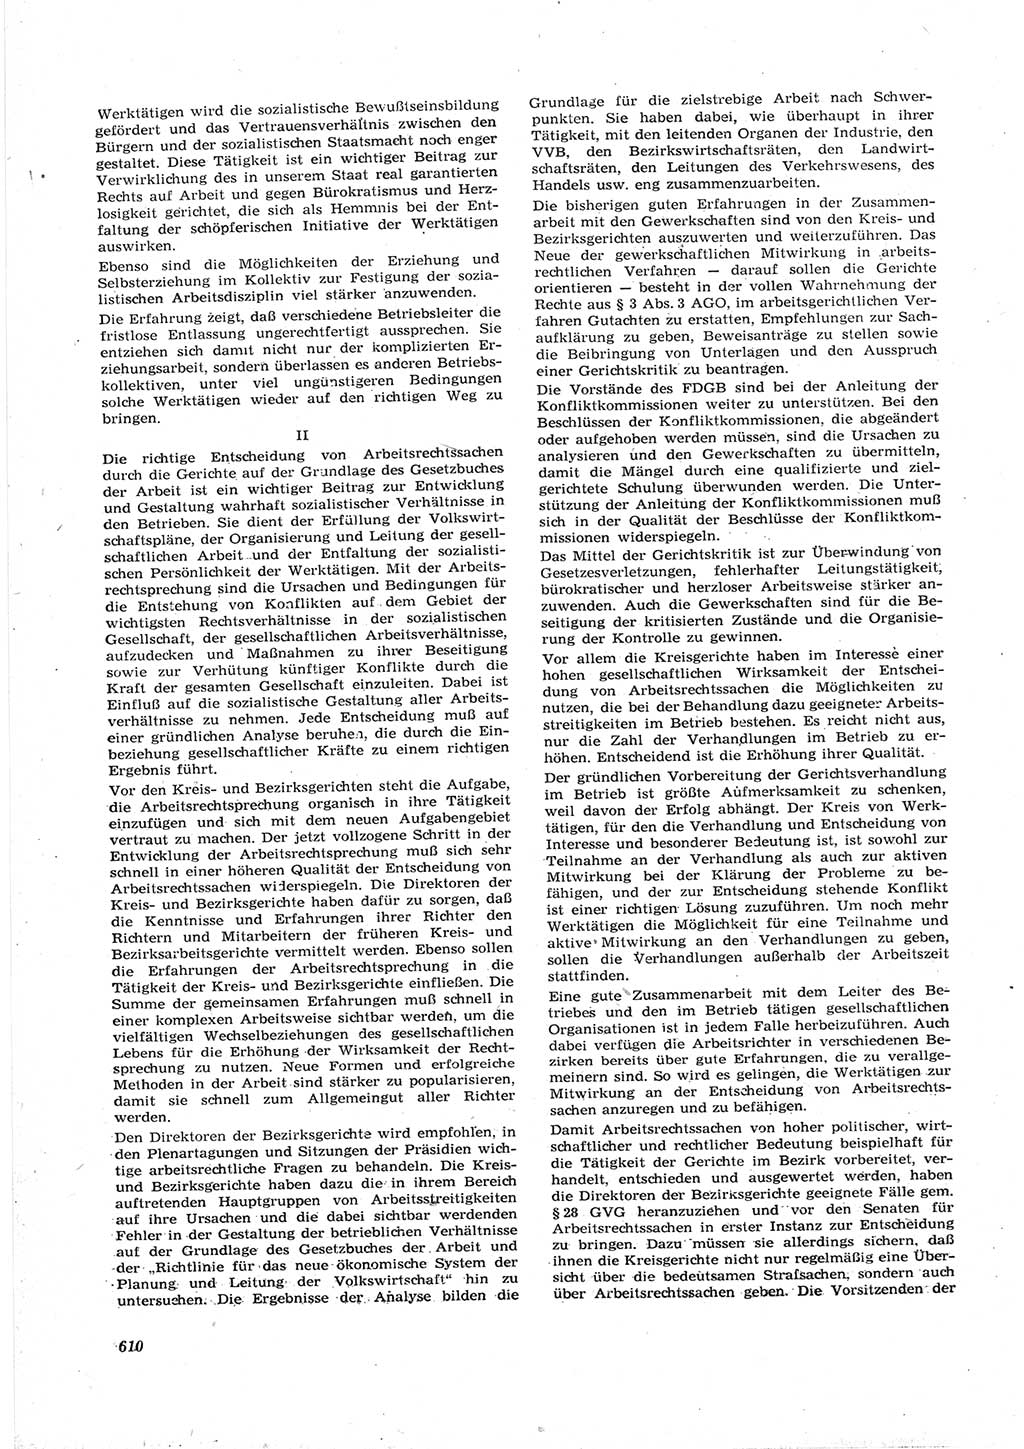 Neue Justiz (NJ), Zeitschrift für Recht und Rechtswissenschaft [Deutsche Demokratische Republik (DDR)], 17. Jahrgang 1963, Seite 610 (NJ DDR 1963, S. 610)